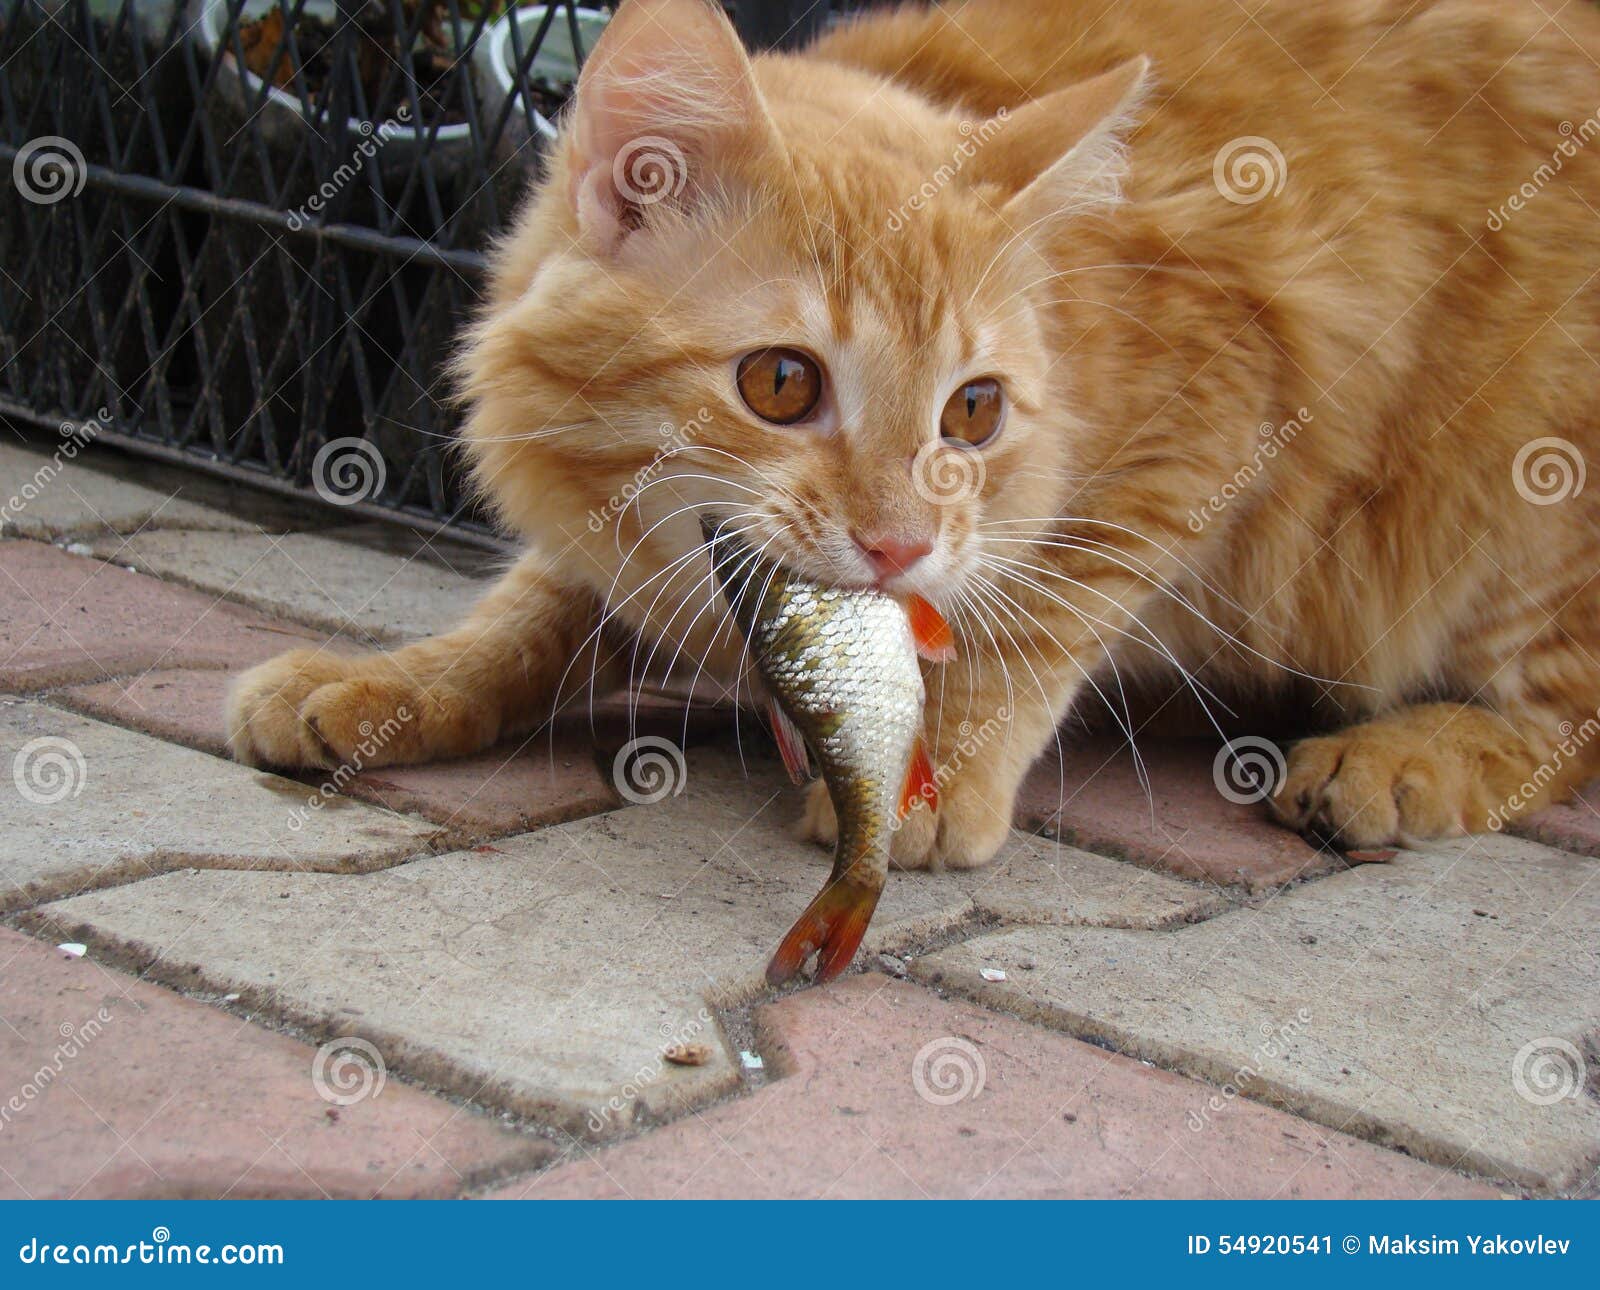 猫咪爱吃鱼？猫咪真的什么鱼都能吃吗！？_鱼肉_食用_主人